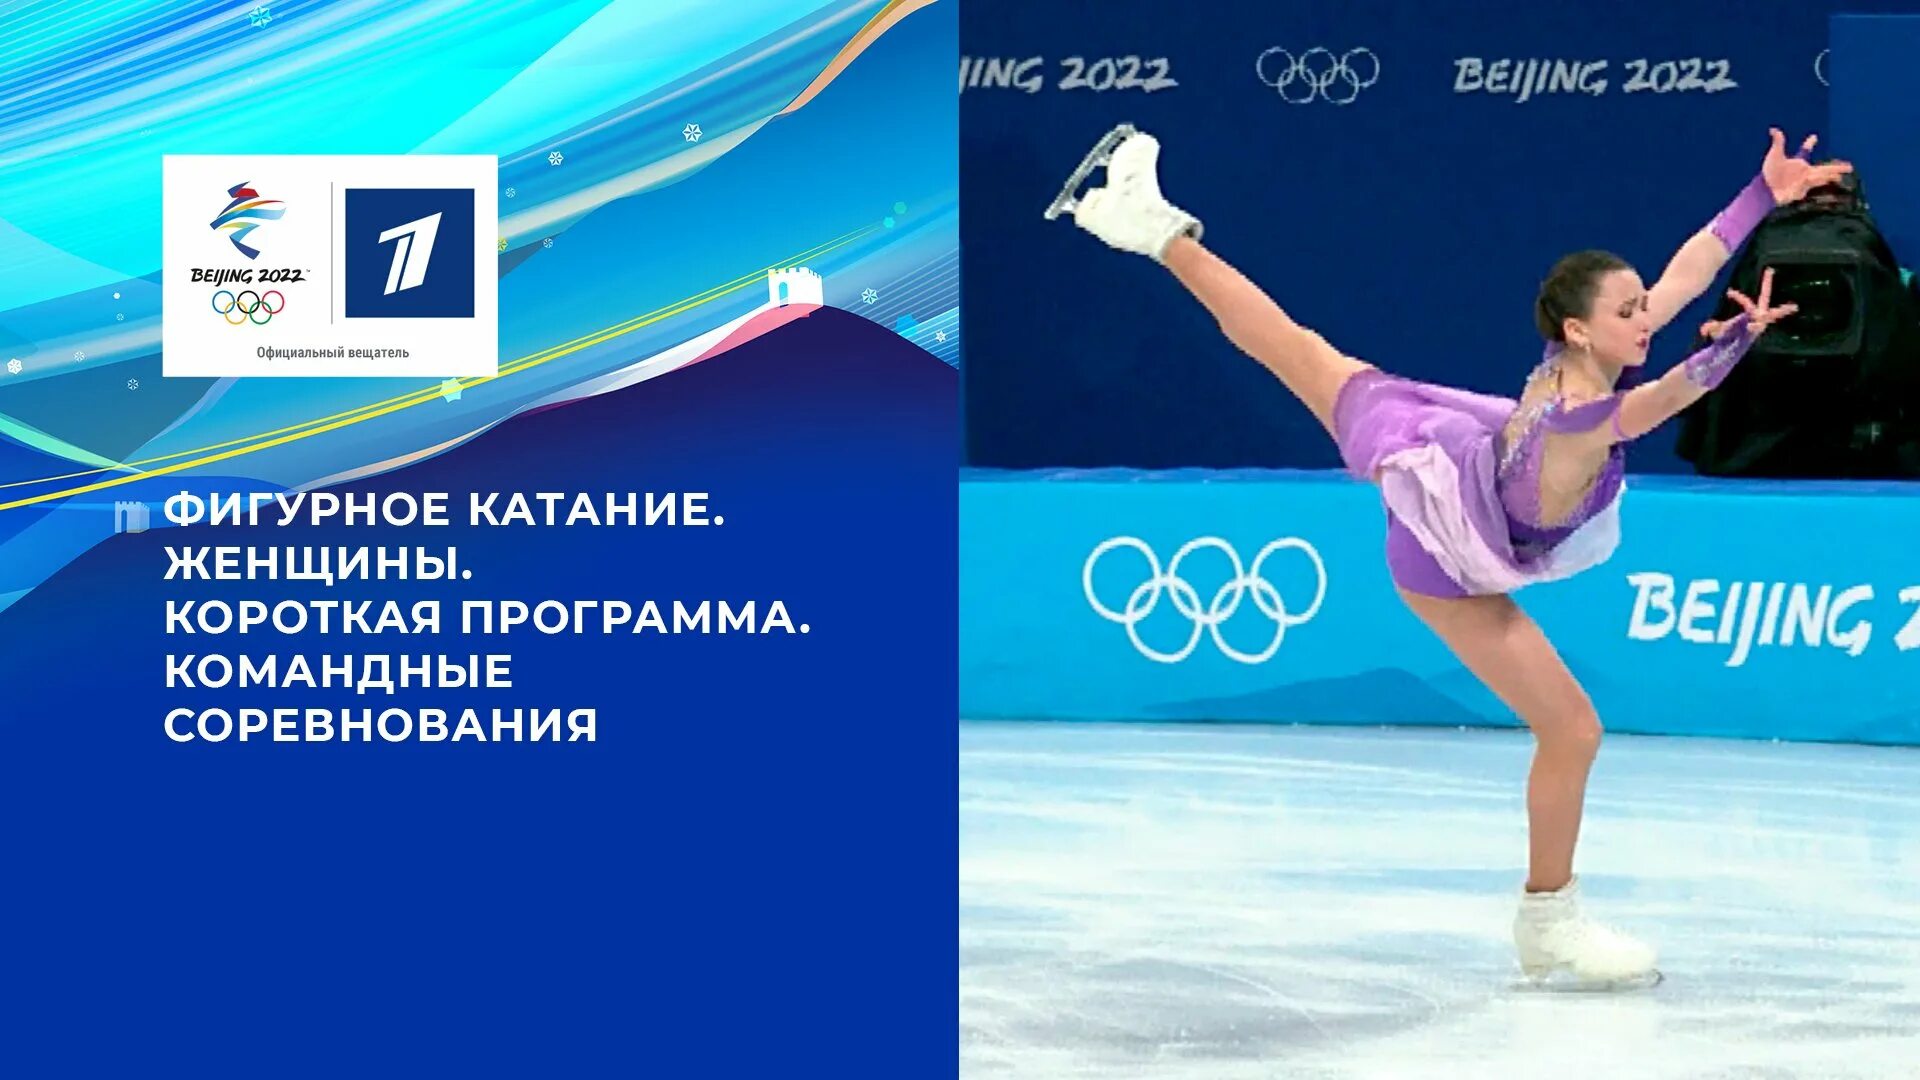 ОИ 2022 фигурное катание Камила Валиева. Олимпийские игры 2022 фигурное катание женщины. Короткая программа женщины. Результаты фигурного катания в магнитогорске